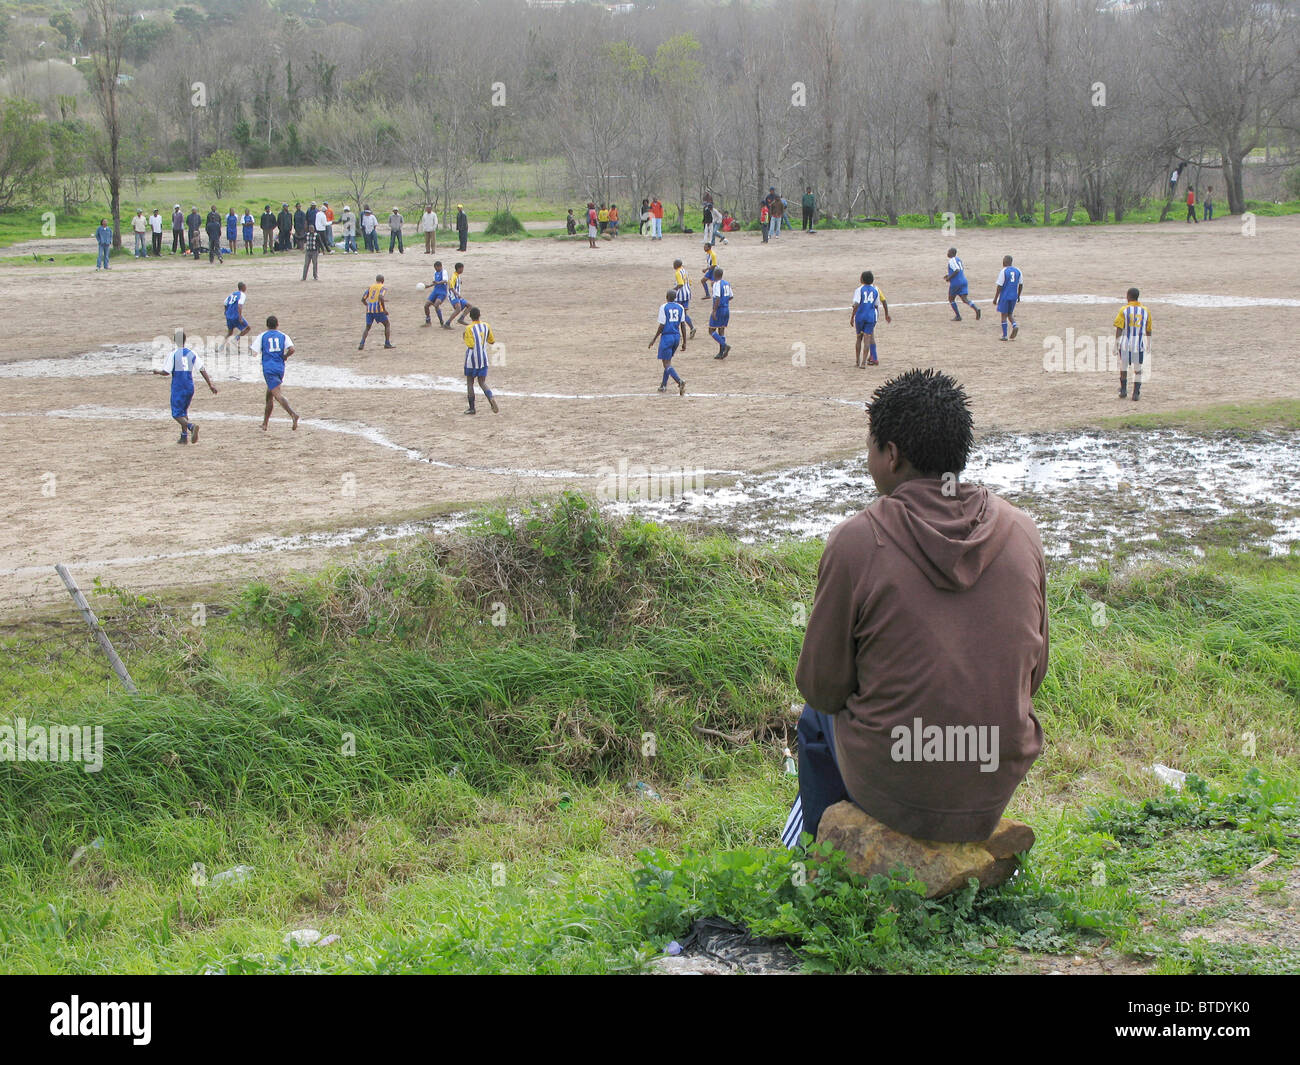 Joven viendo un partido de fútbol en un campo anegado Foto de stock